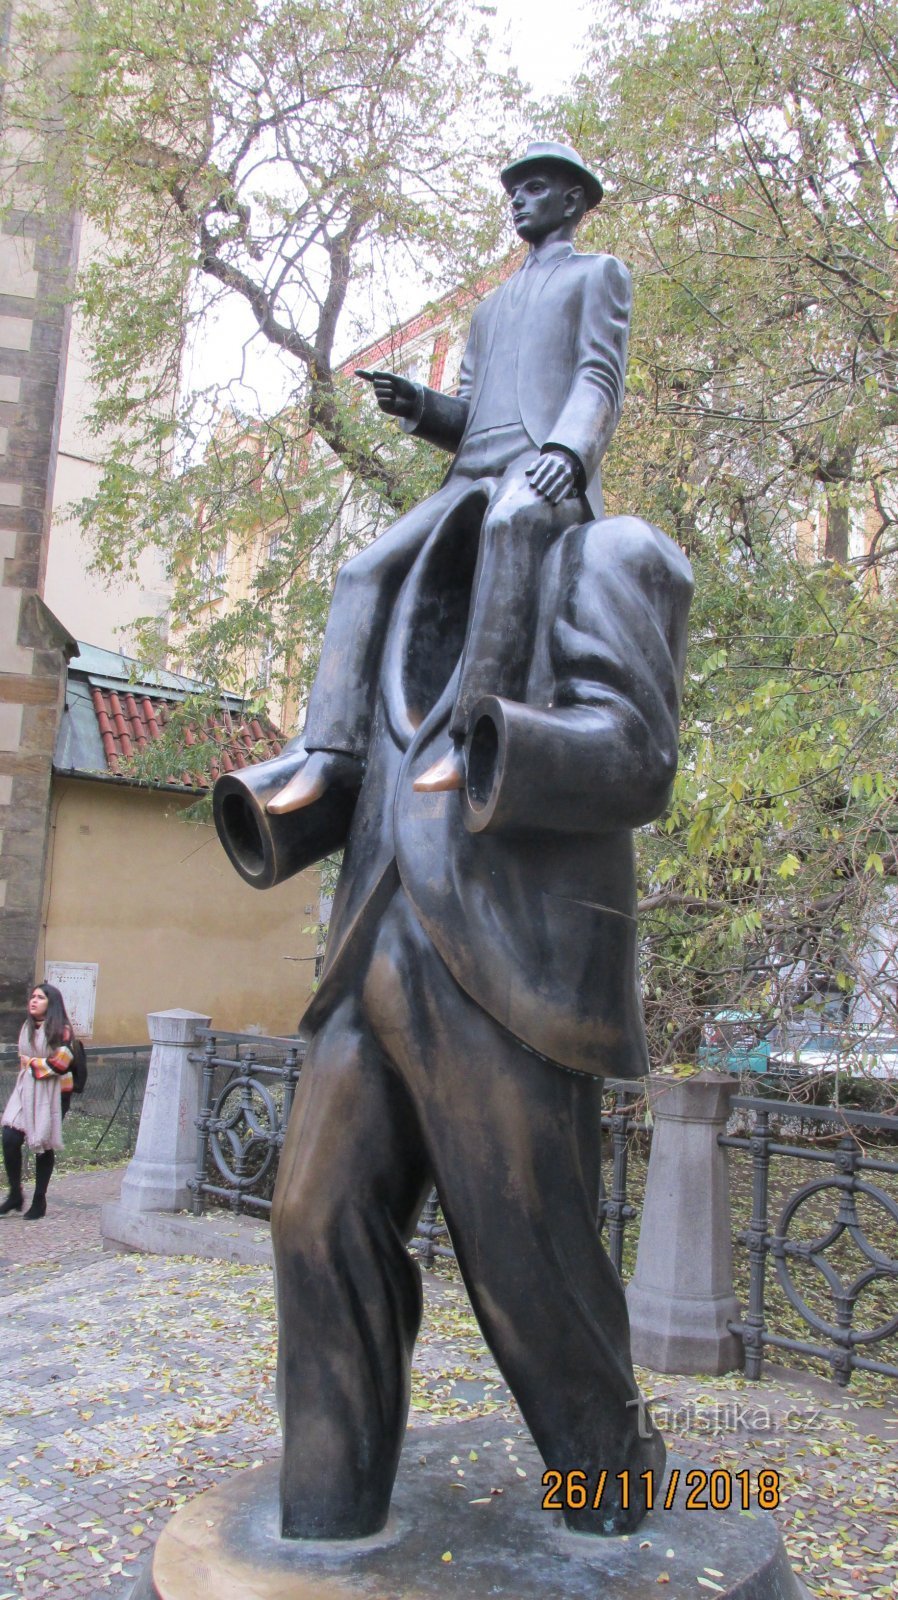 Spomenik Franzu Kafki